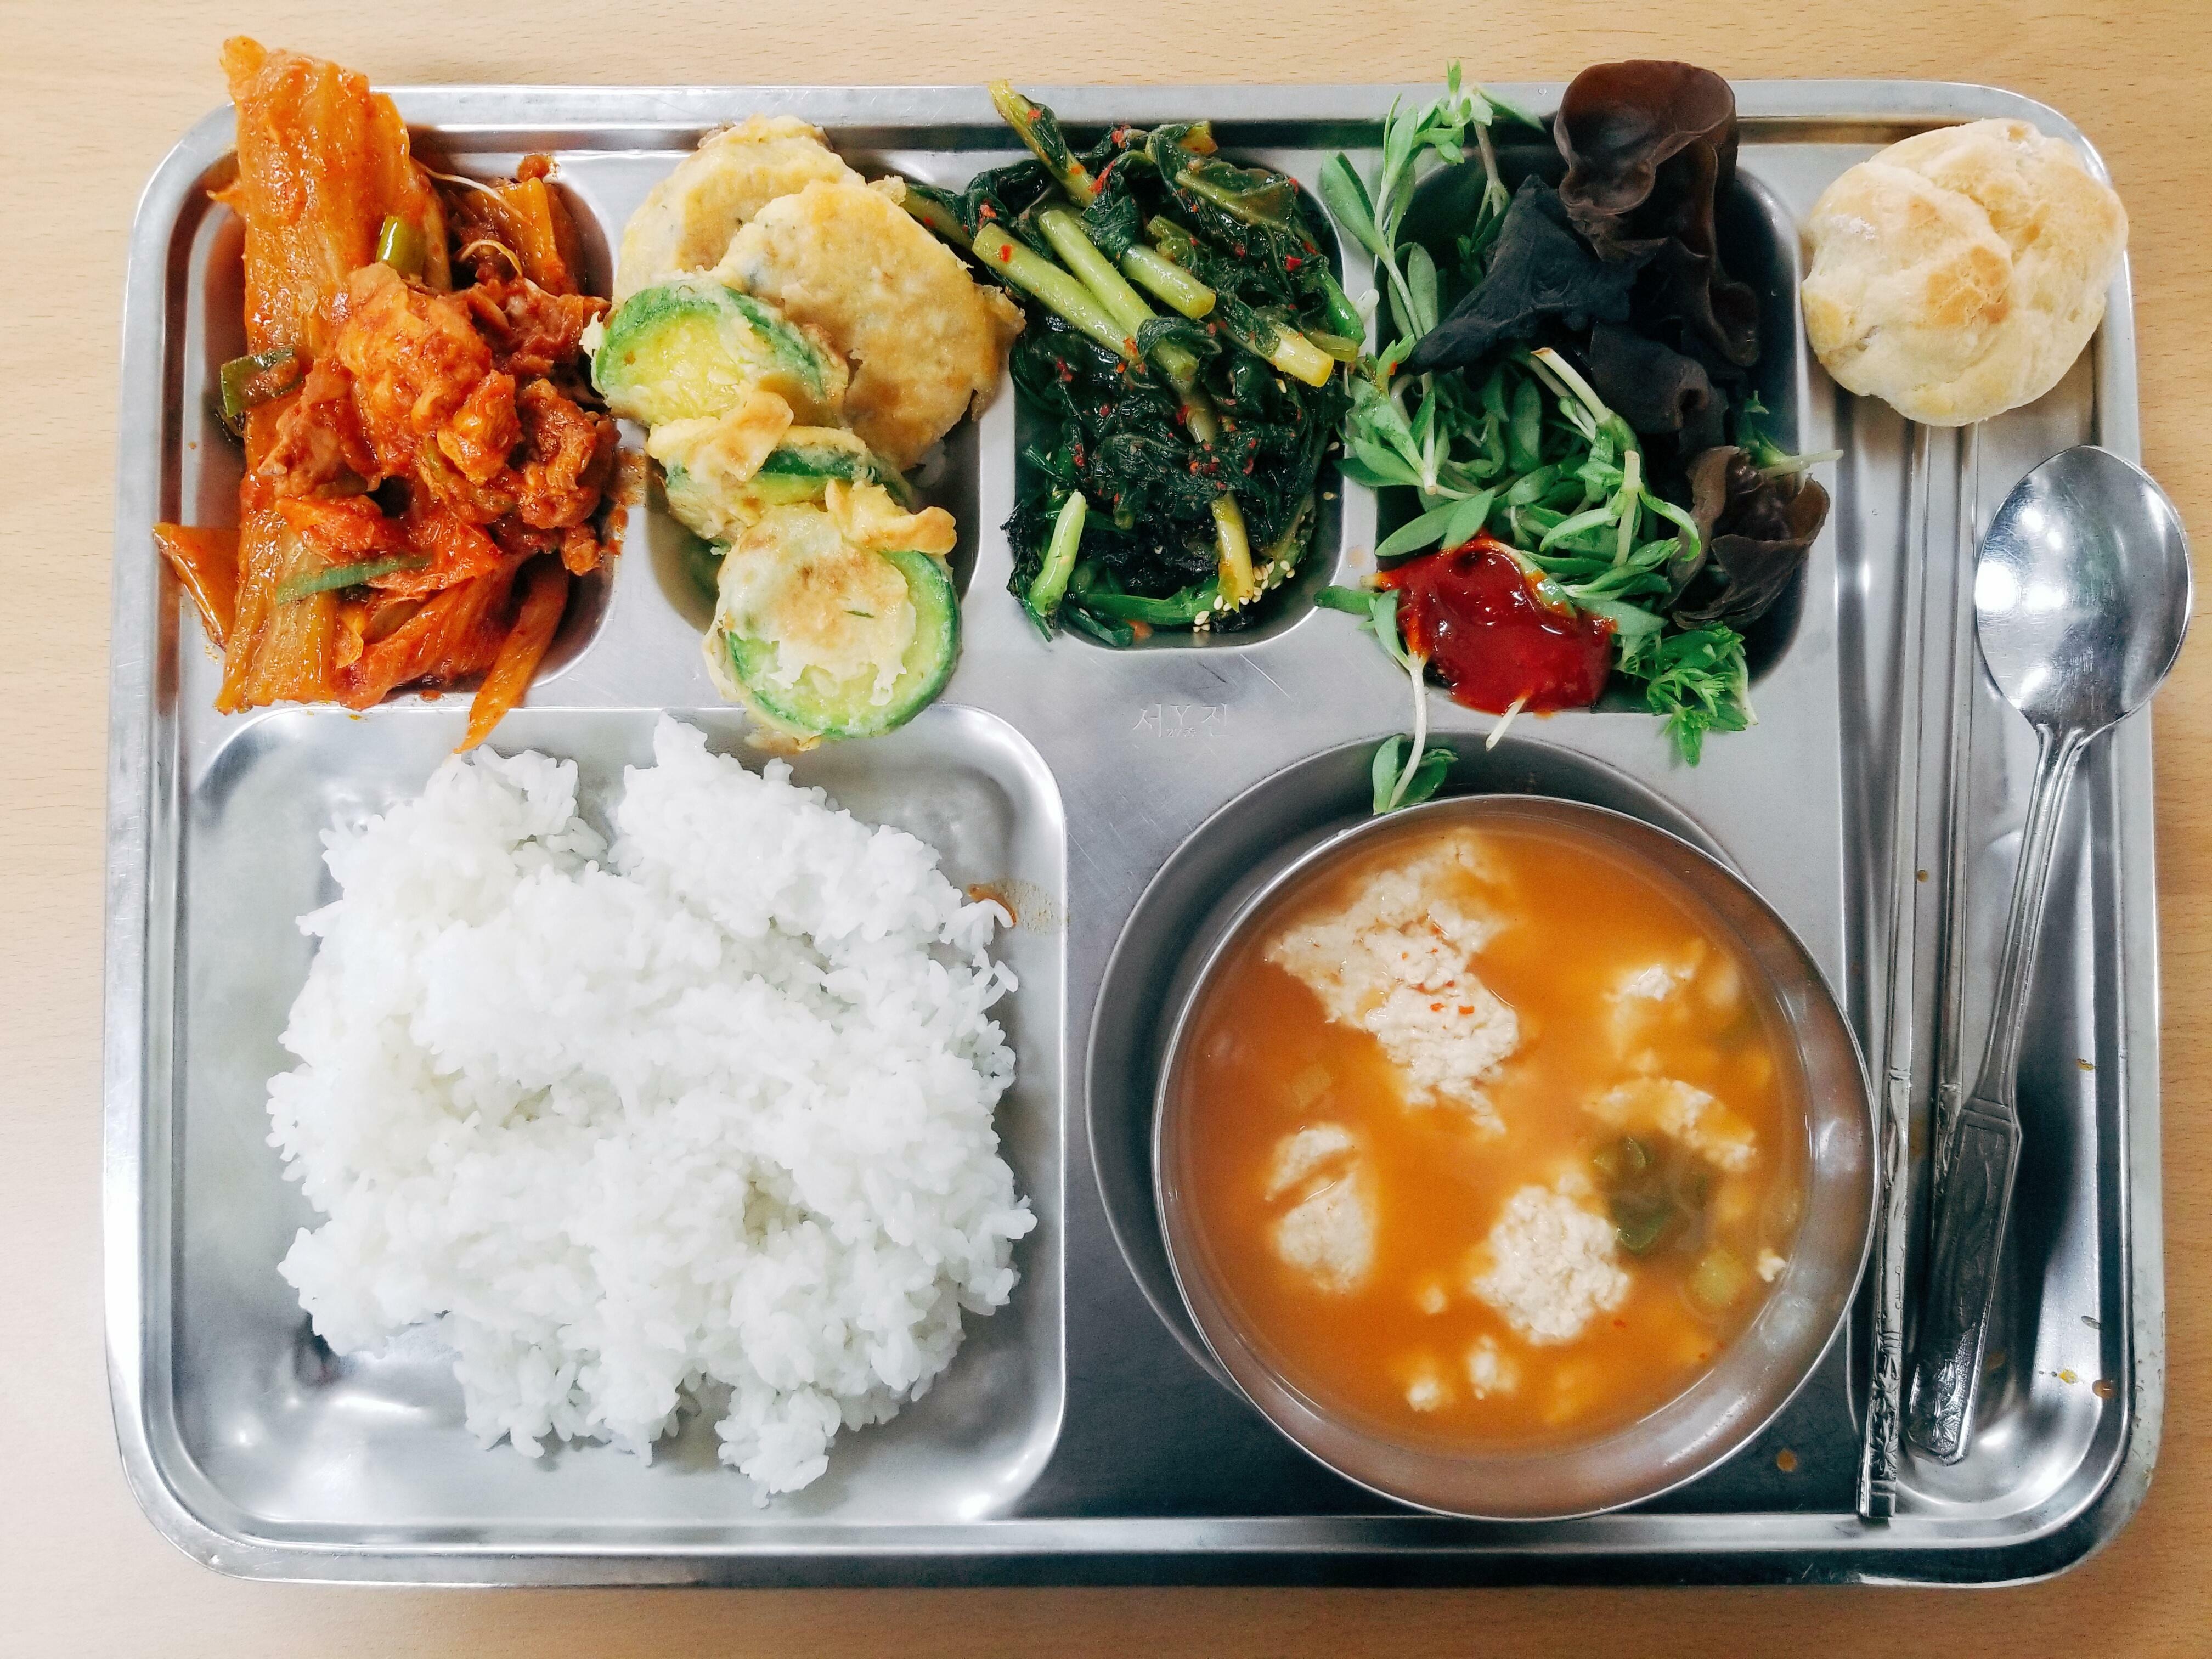 Déjeuner scolaire typique en Corée du Sud